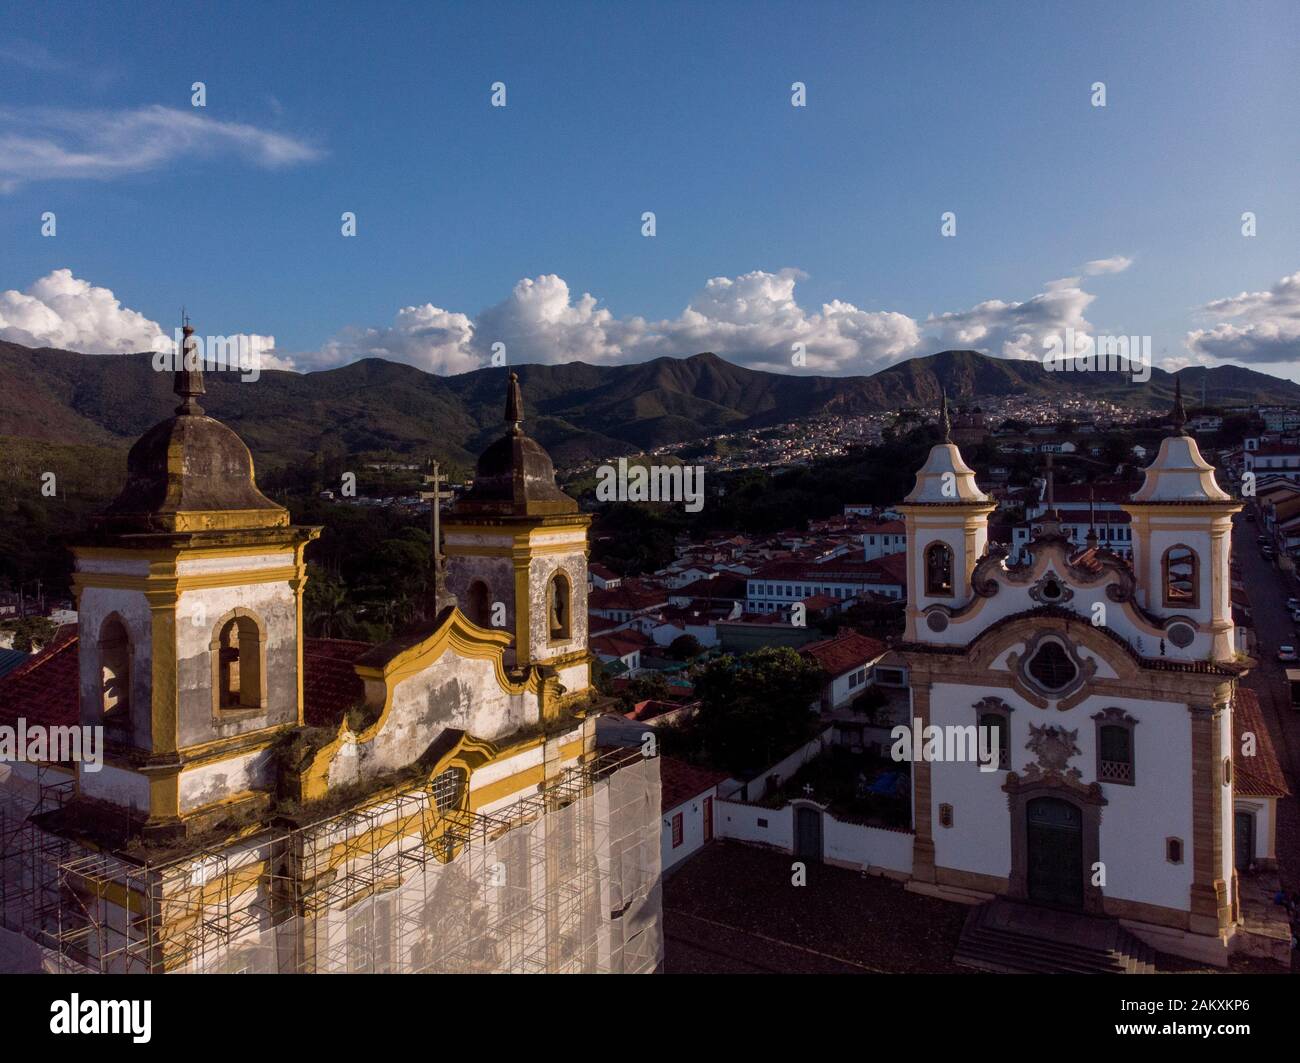 Piazza storica centrale con due chiese nella città mineraria coloniale di Mariana a Minas Gerais con una di esse avvolta come parte del restauro Foto Stock